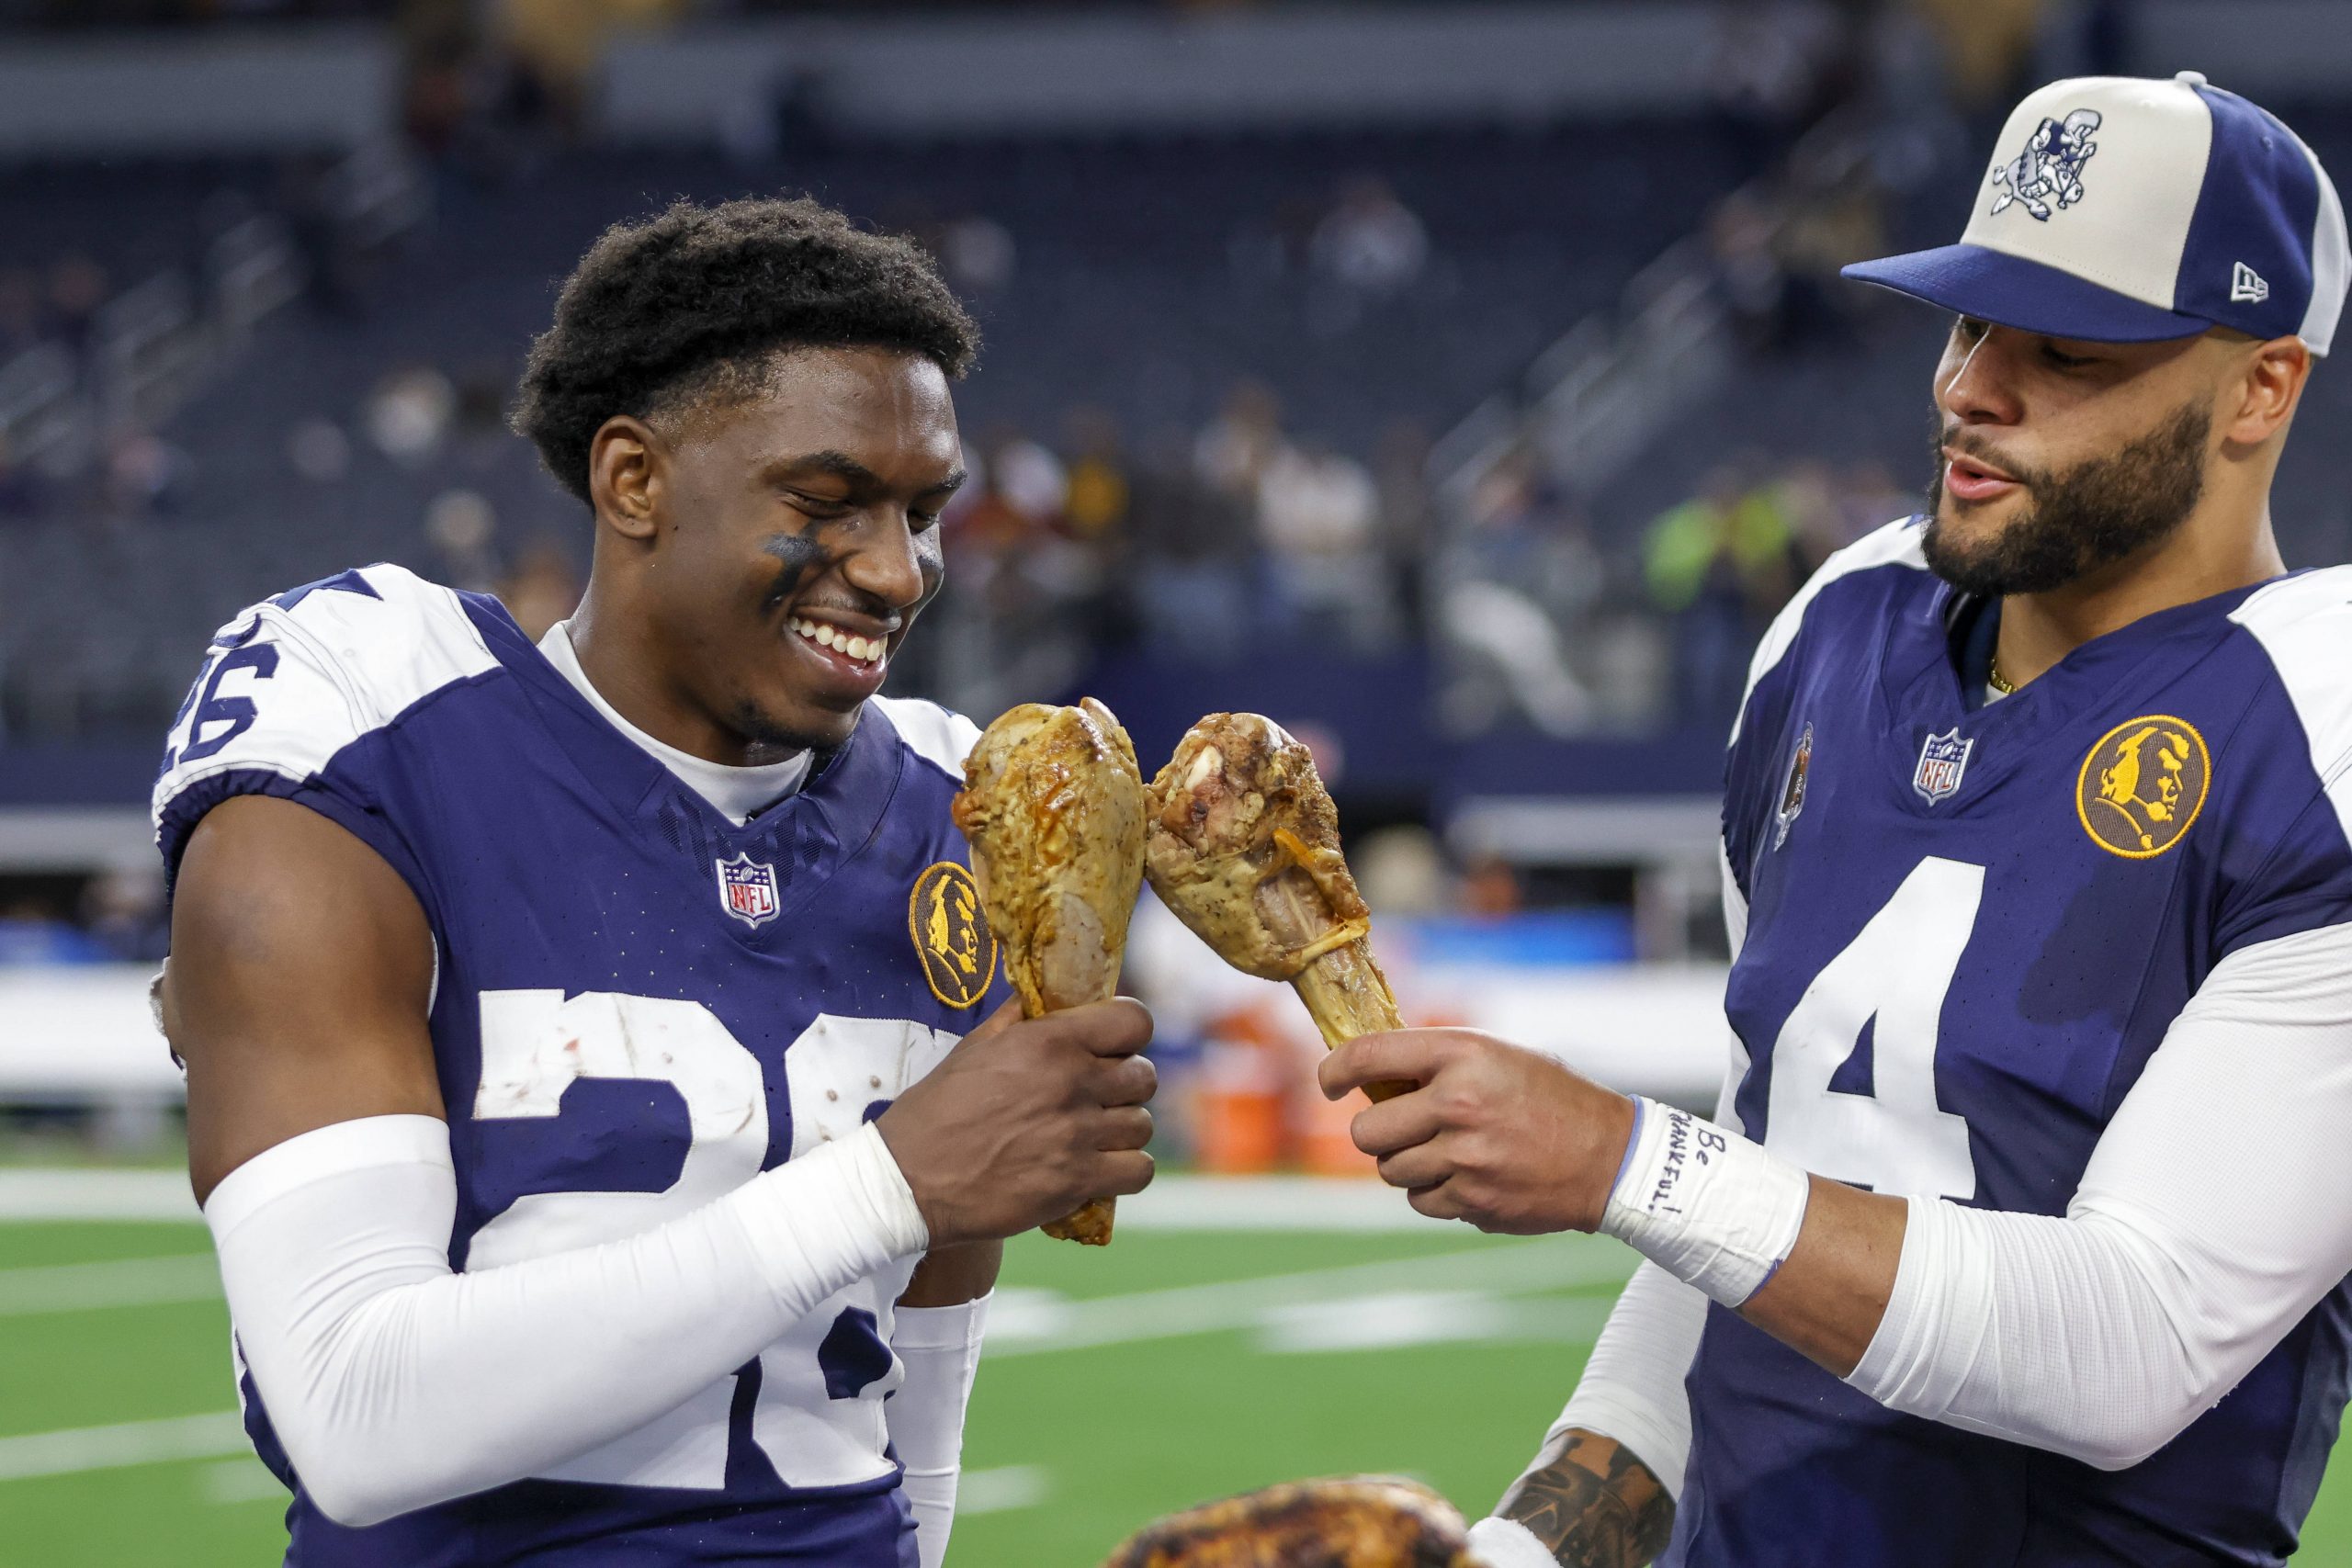 FootballR - NFL Thanksgiving Zuschauerrekord - DaRon Bland und Dak Prescott halten Truthahnkeulen auf einem Feld und erinnern sich dabei an die Geschichte, die durch den aufregenden Pick-6 geschrieben wurde.